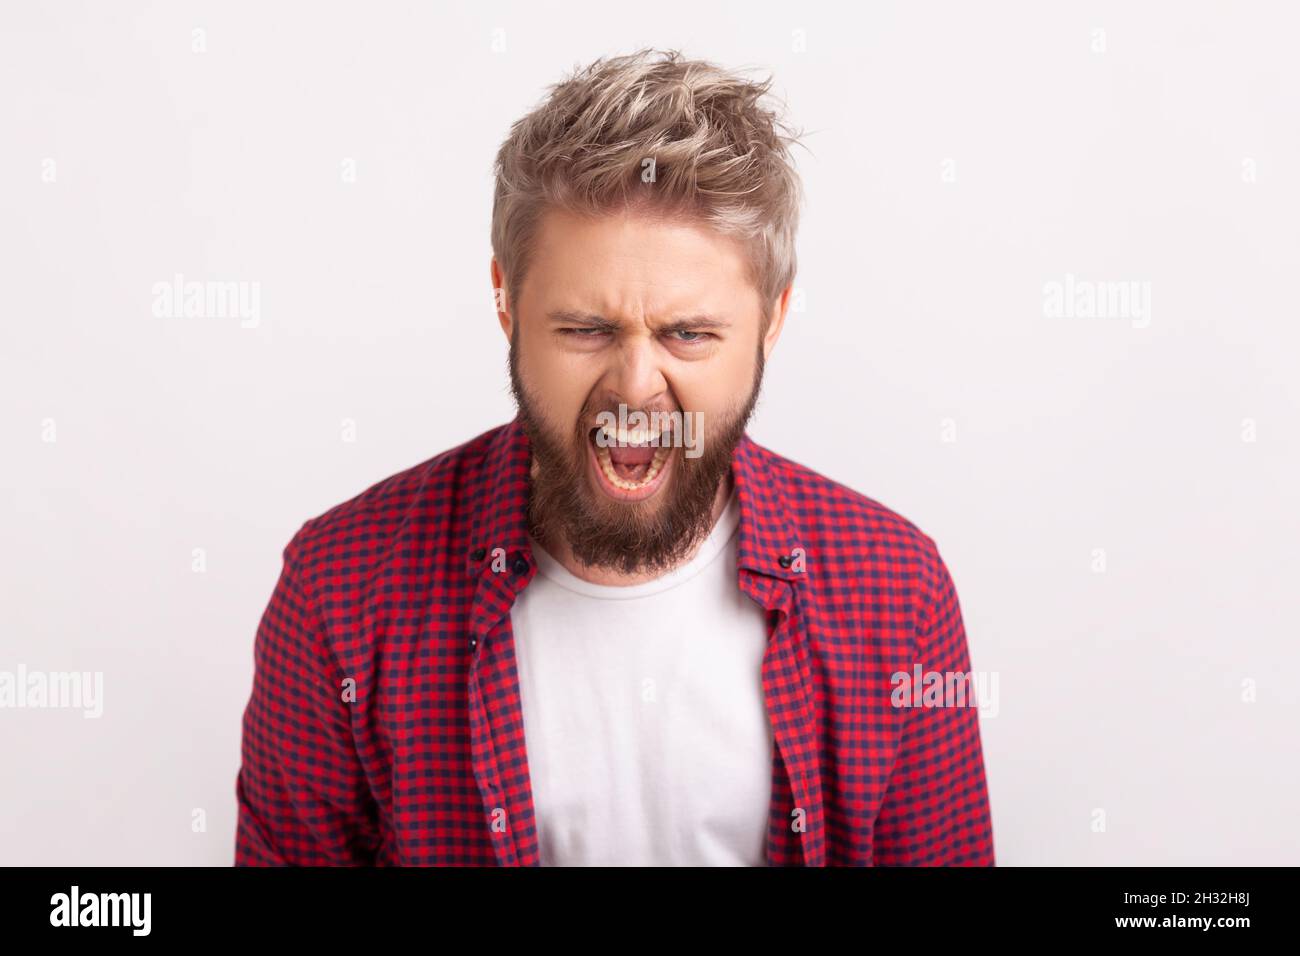 Retrato de un joven disgustado con barba gritando mirando la cámara, expresando enojo e irritación, mal humor. Estudio en interior grabado aislado sobre fondo gris Foto de stock